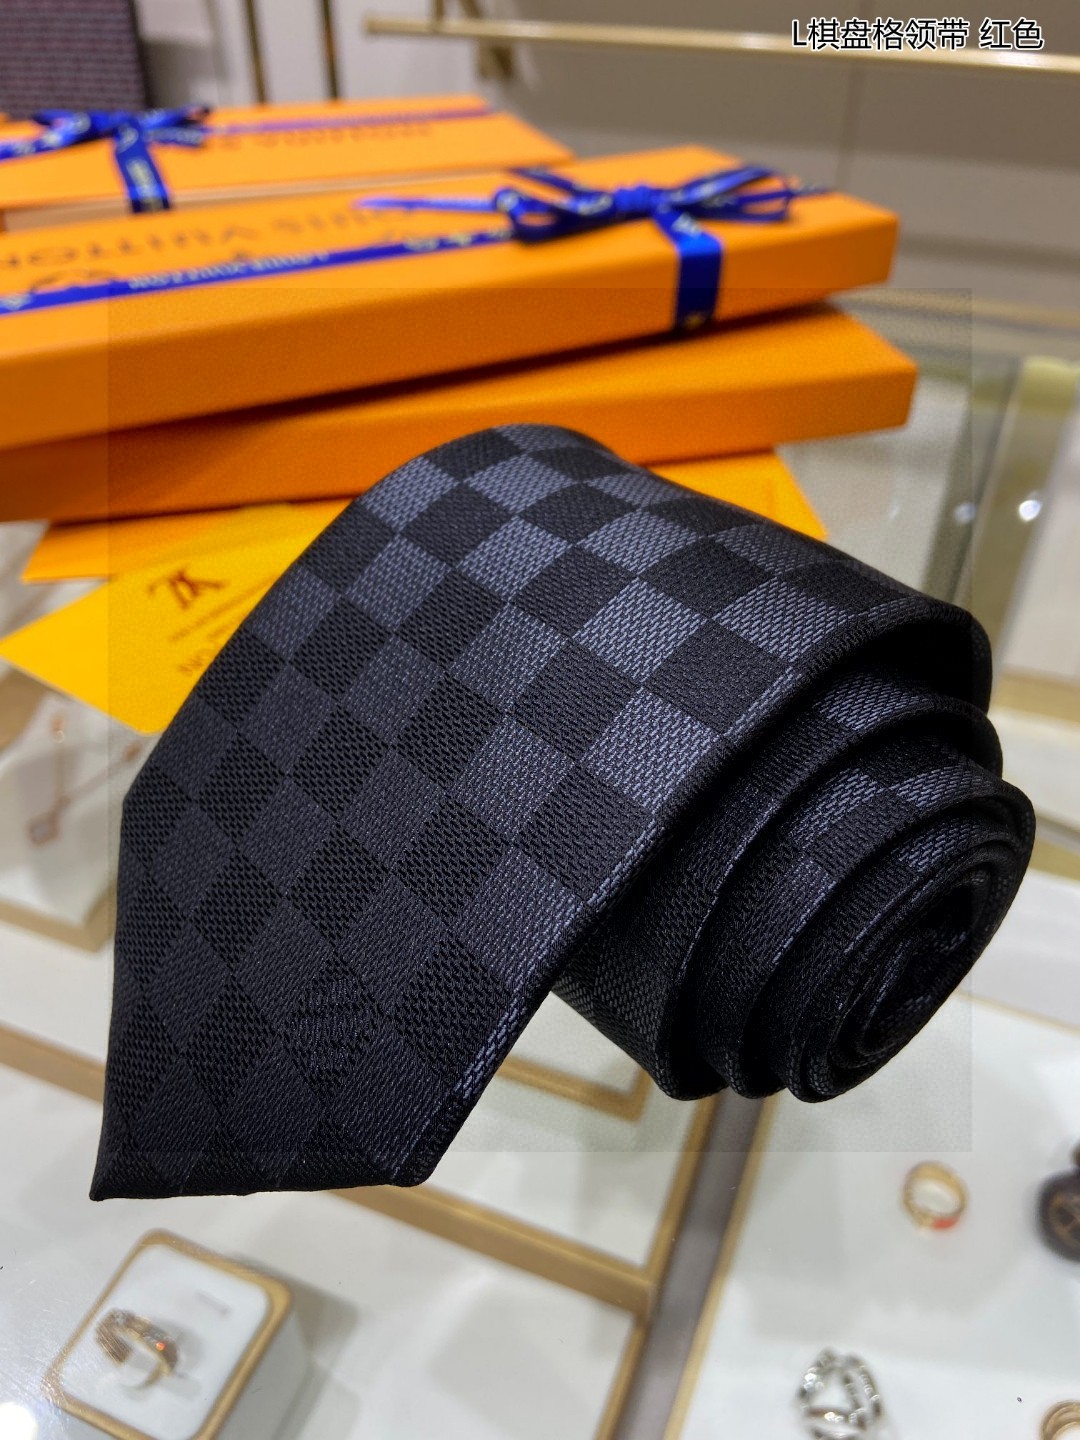 男士领带系列L棋盘格领带稀有展现精湛手工与时尚优雅的理想选择这款领带将标志性的路易威登Damier图案以